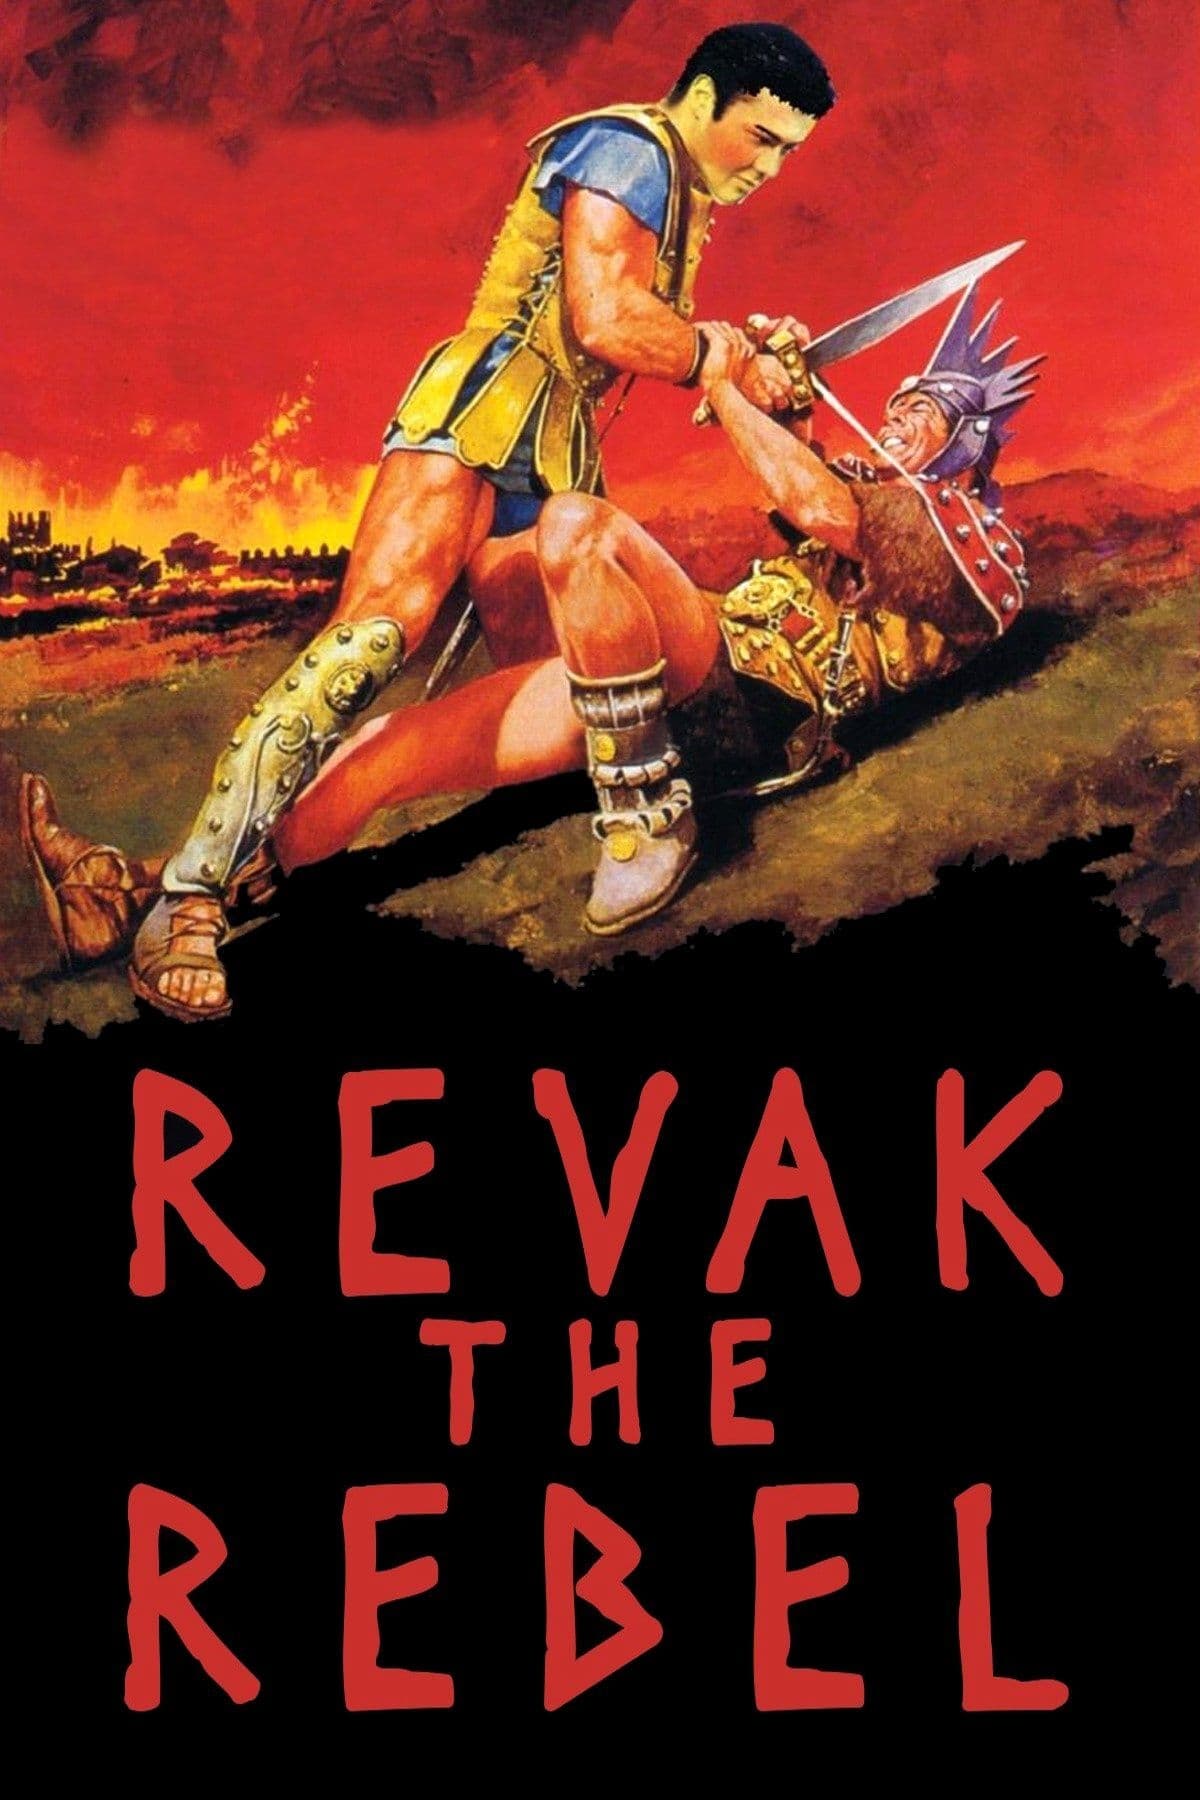 Revak, der Sklave von Karthago